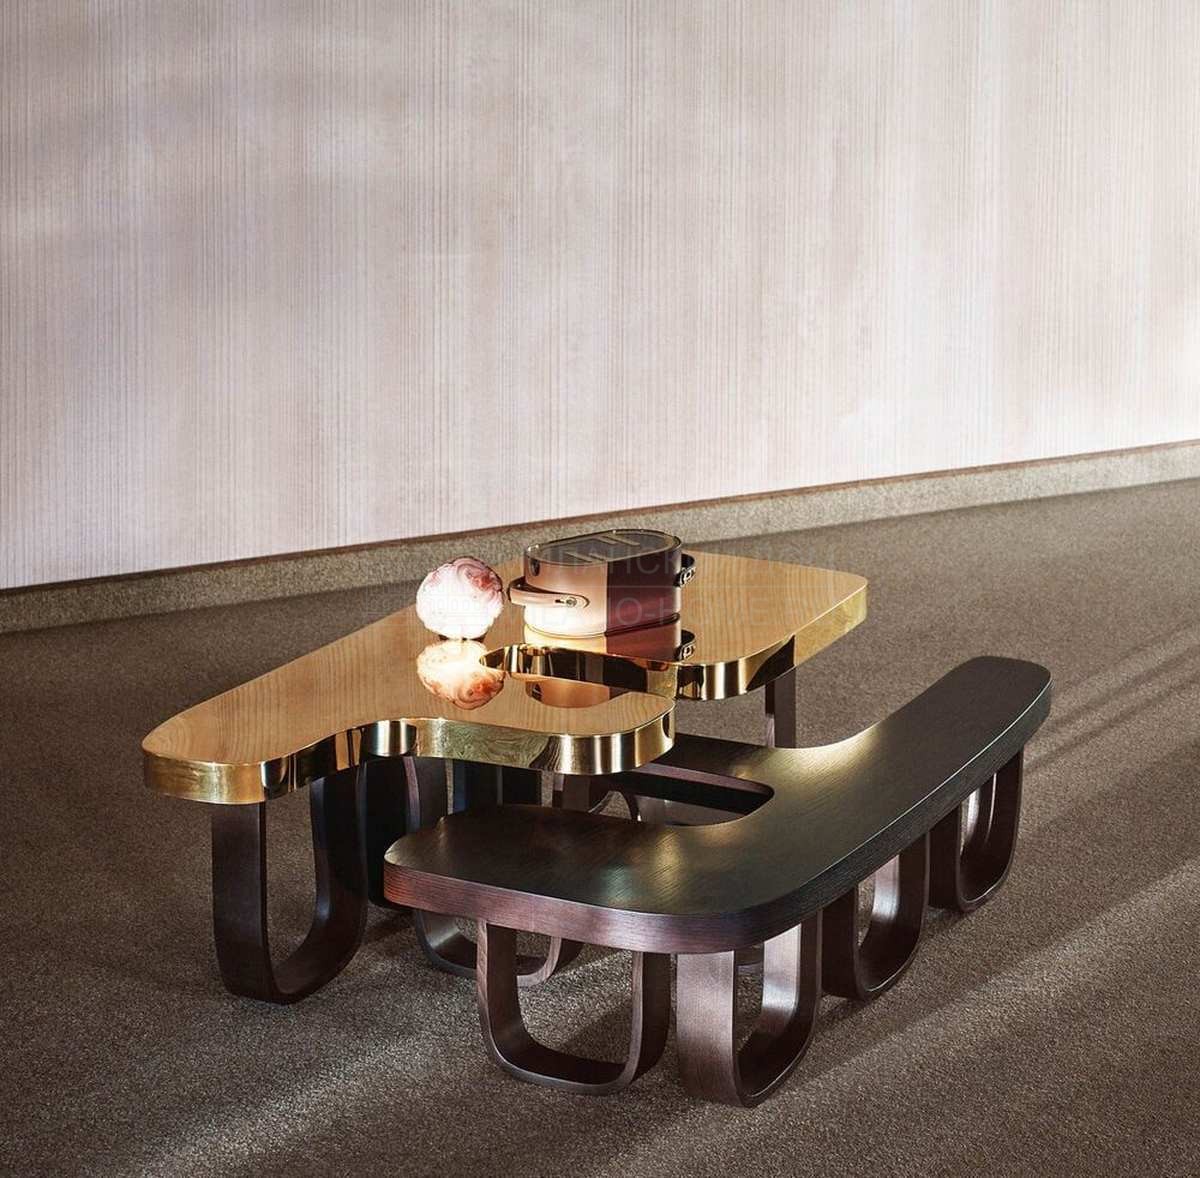 Кофейный столик Efo coffee table из Италии фабрики FENDI Casa